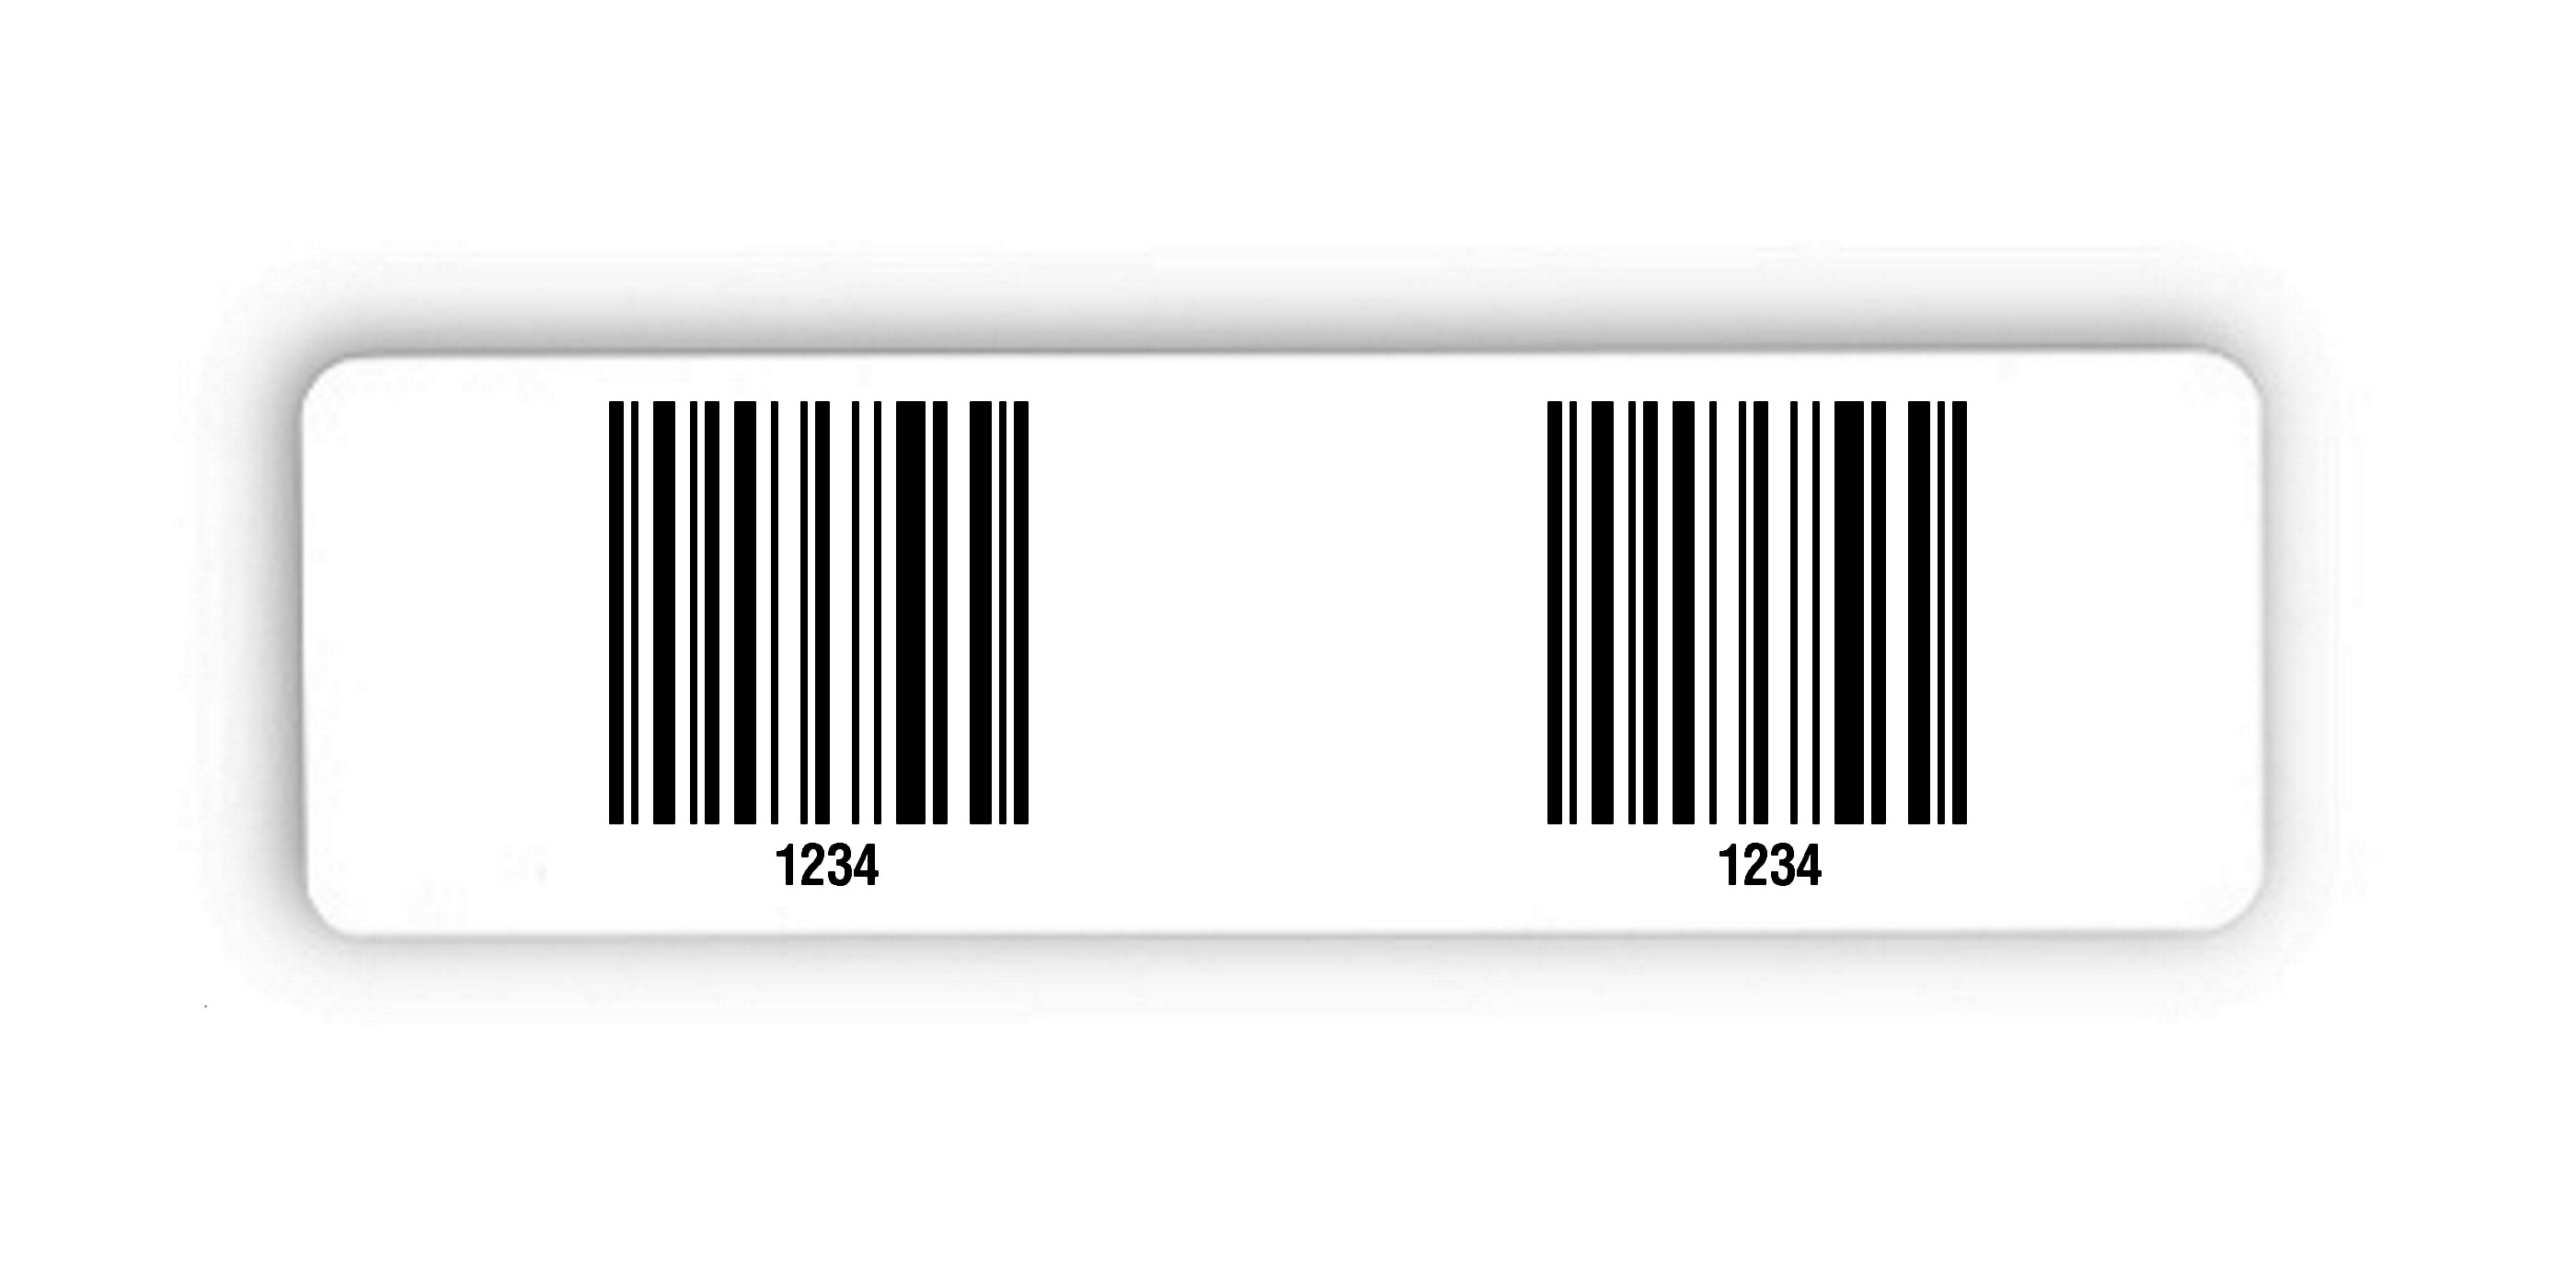 Palettenetiketten Material:Polyethylen-Folie hochglänzend weiß Größe:150x50mm Kopfzeile:"ohne" Barcode:128C Stellenanzahl:4-stellig Menge:300